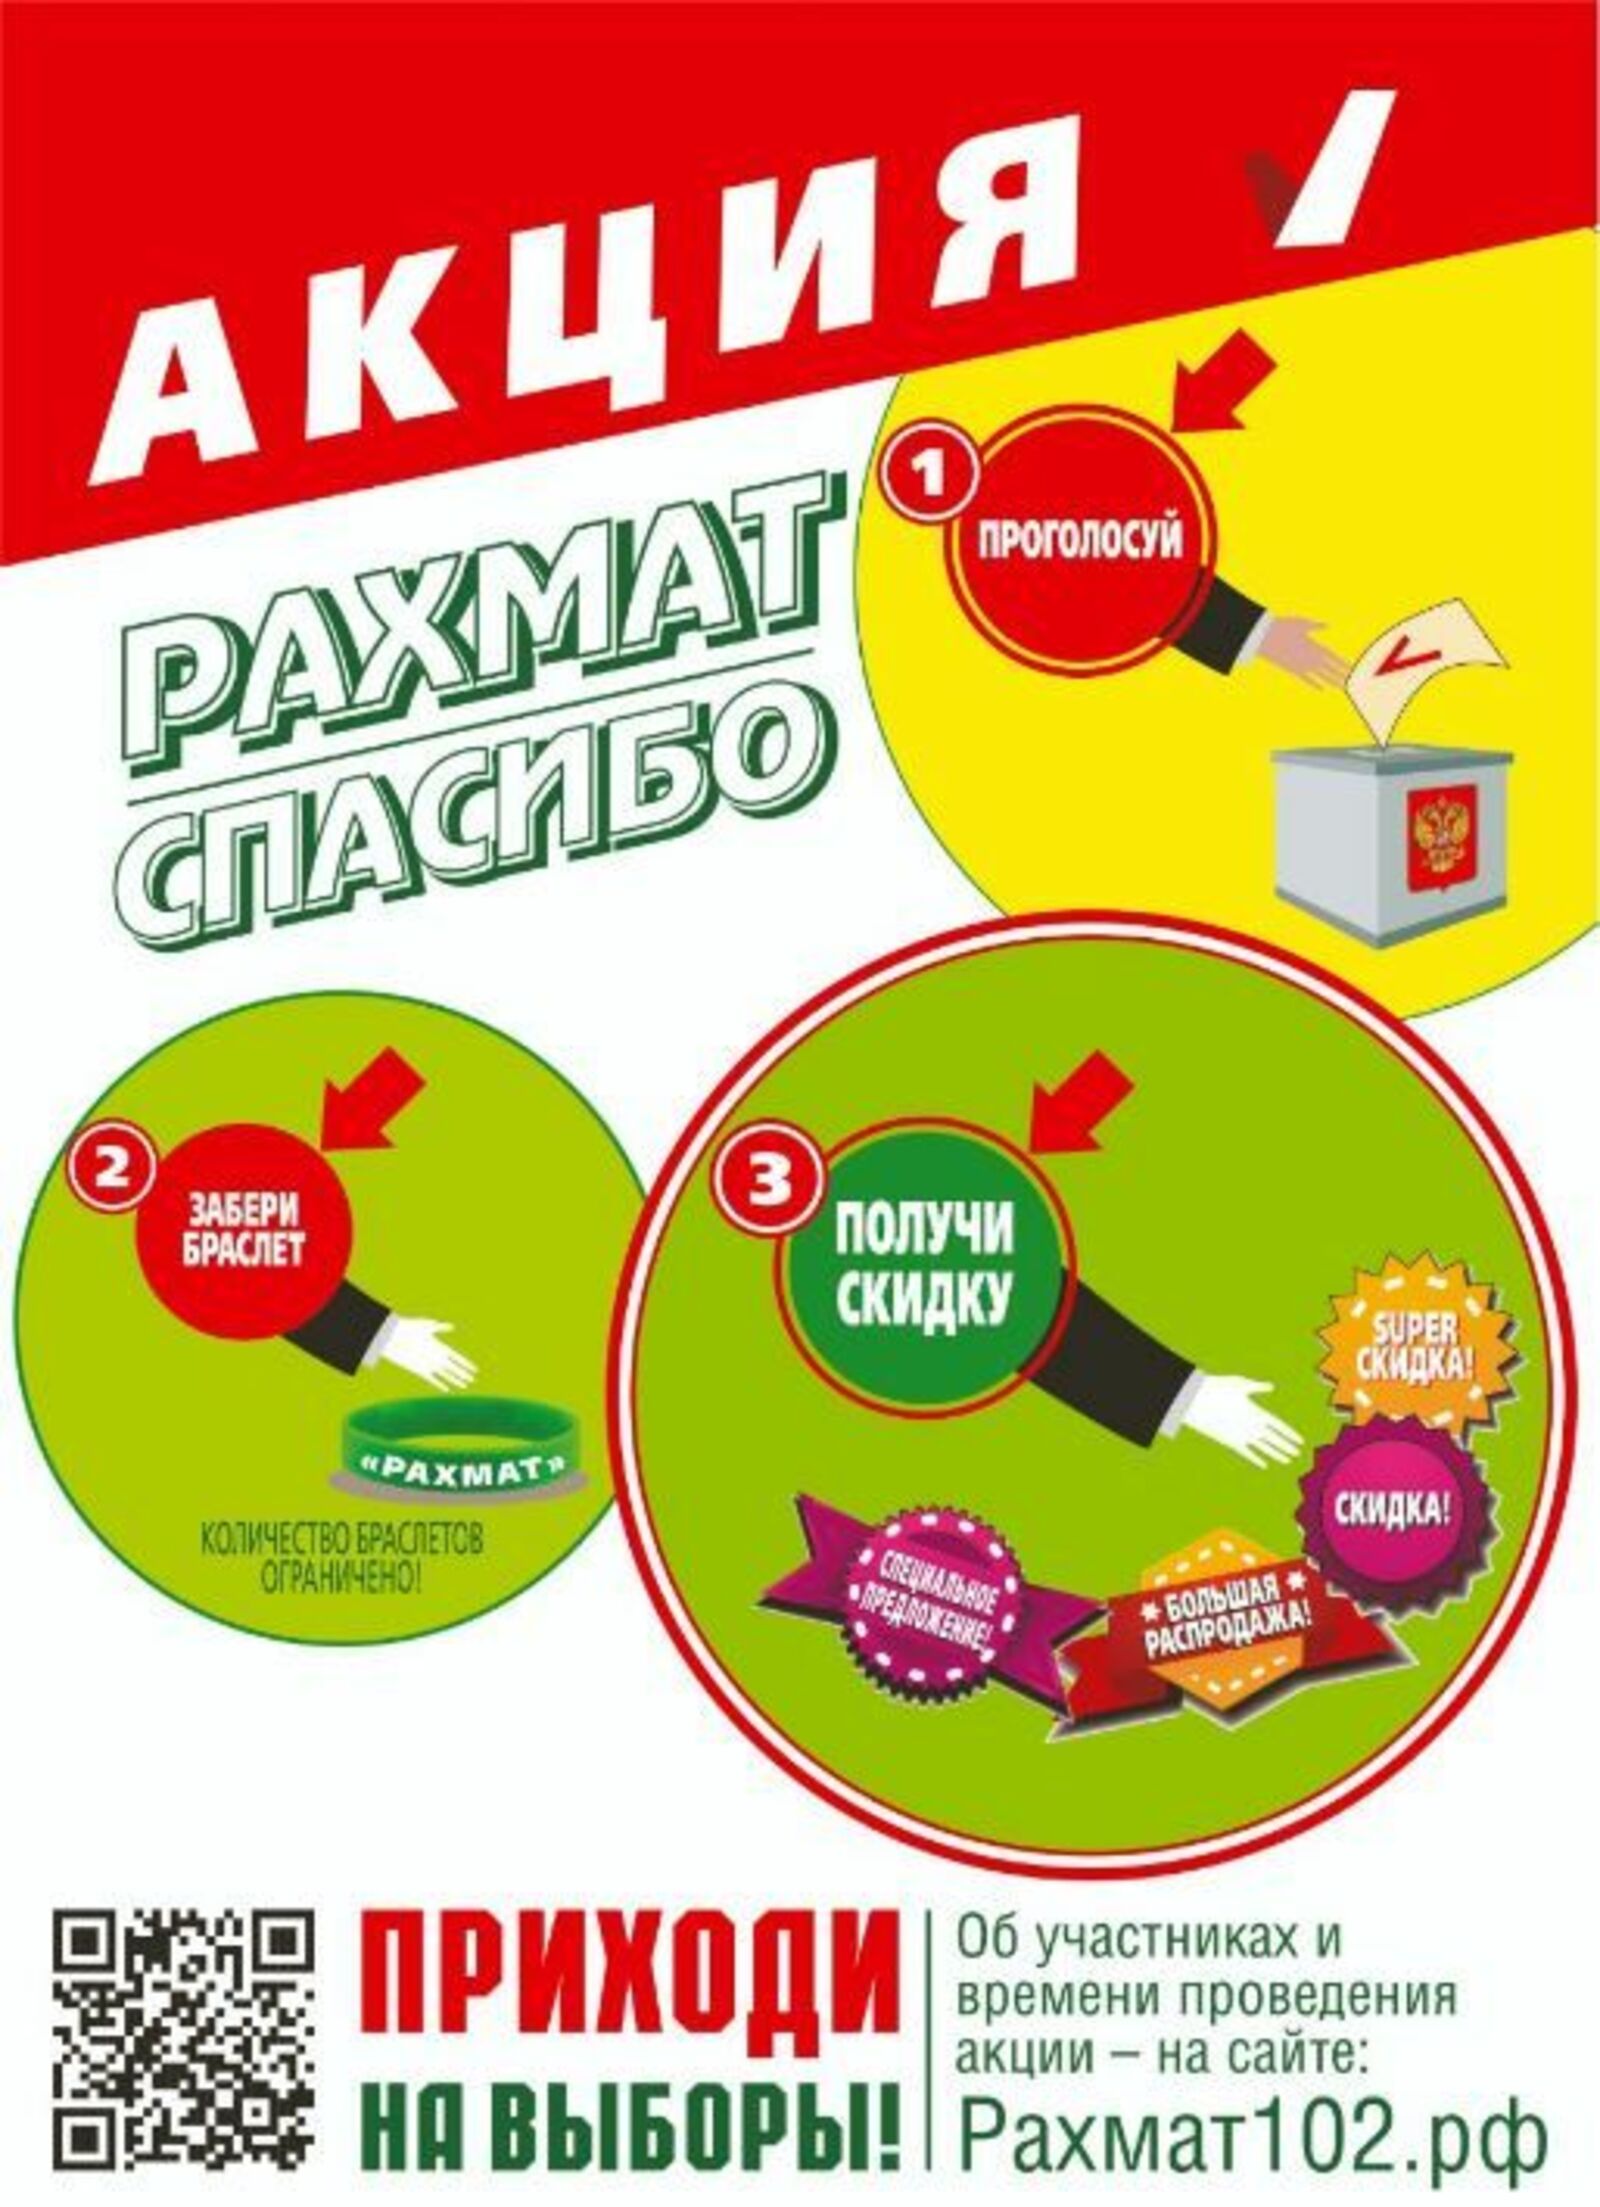 Проголосуй, забери браслет, получи скидку! В Башкирии в дни голосования проведут традиционную акцию «Рахмат»